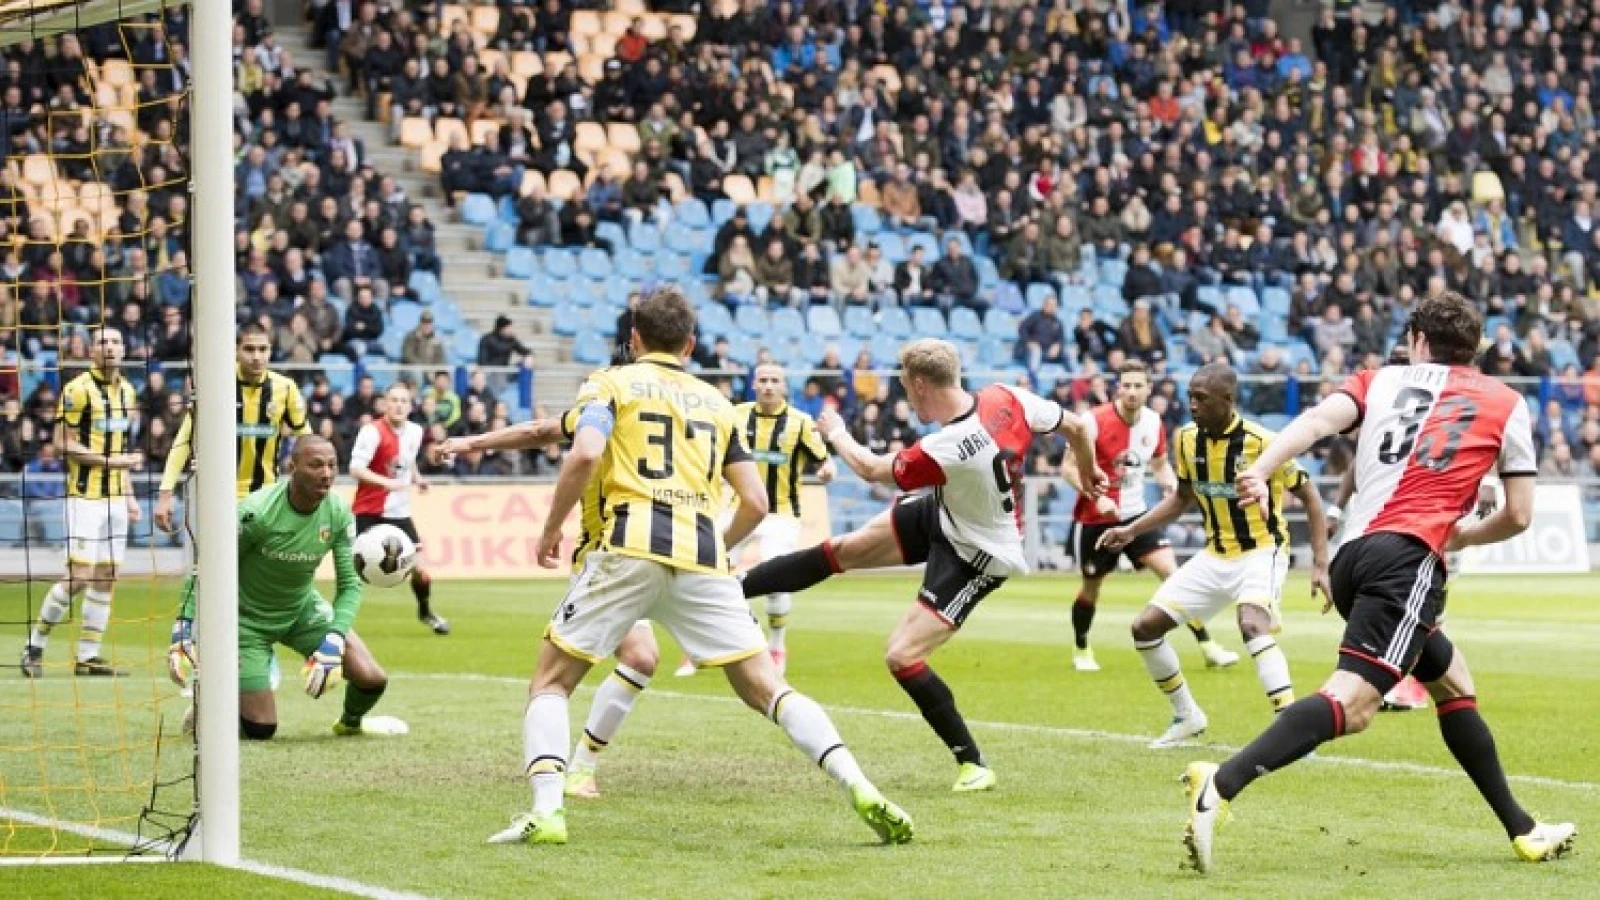 LIVE | Vitesse - Feyenoord 0-2 | Einde wedstrijd